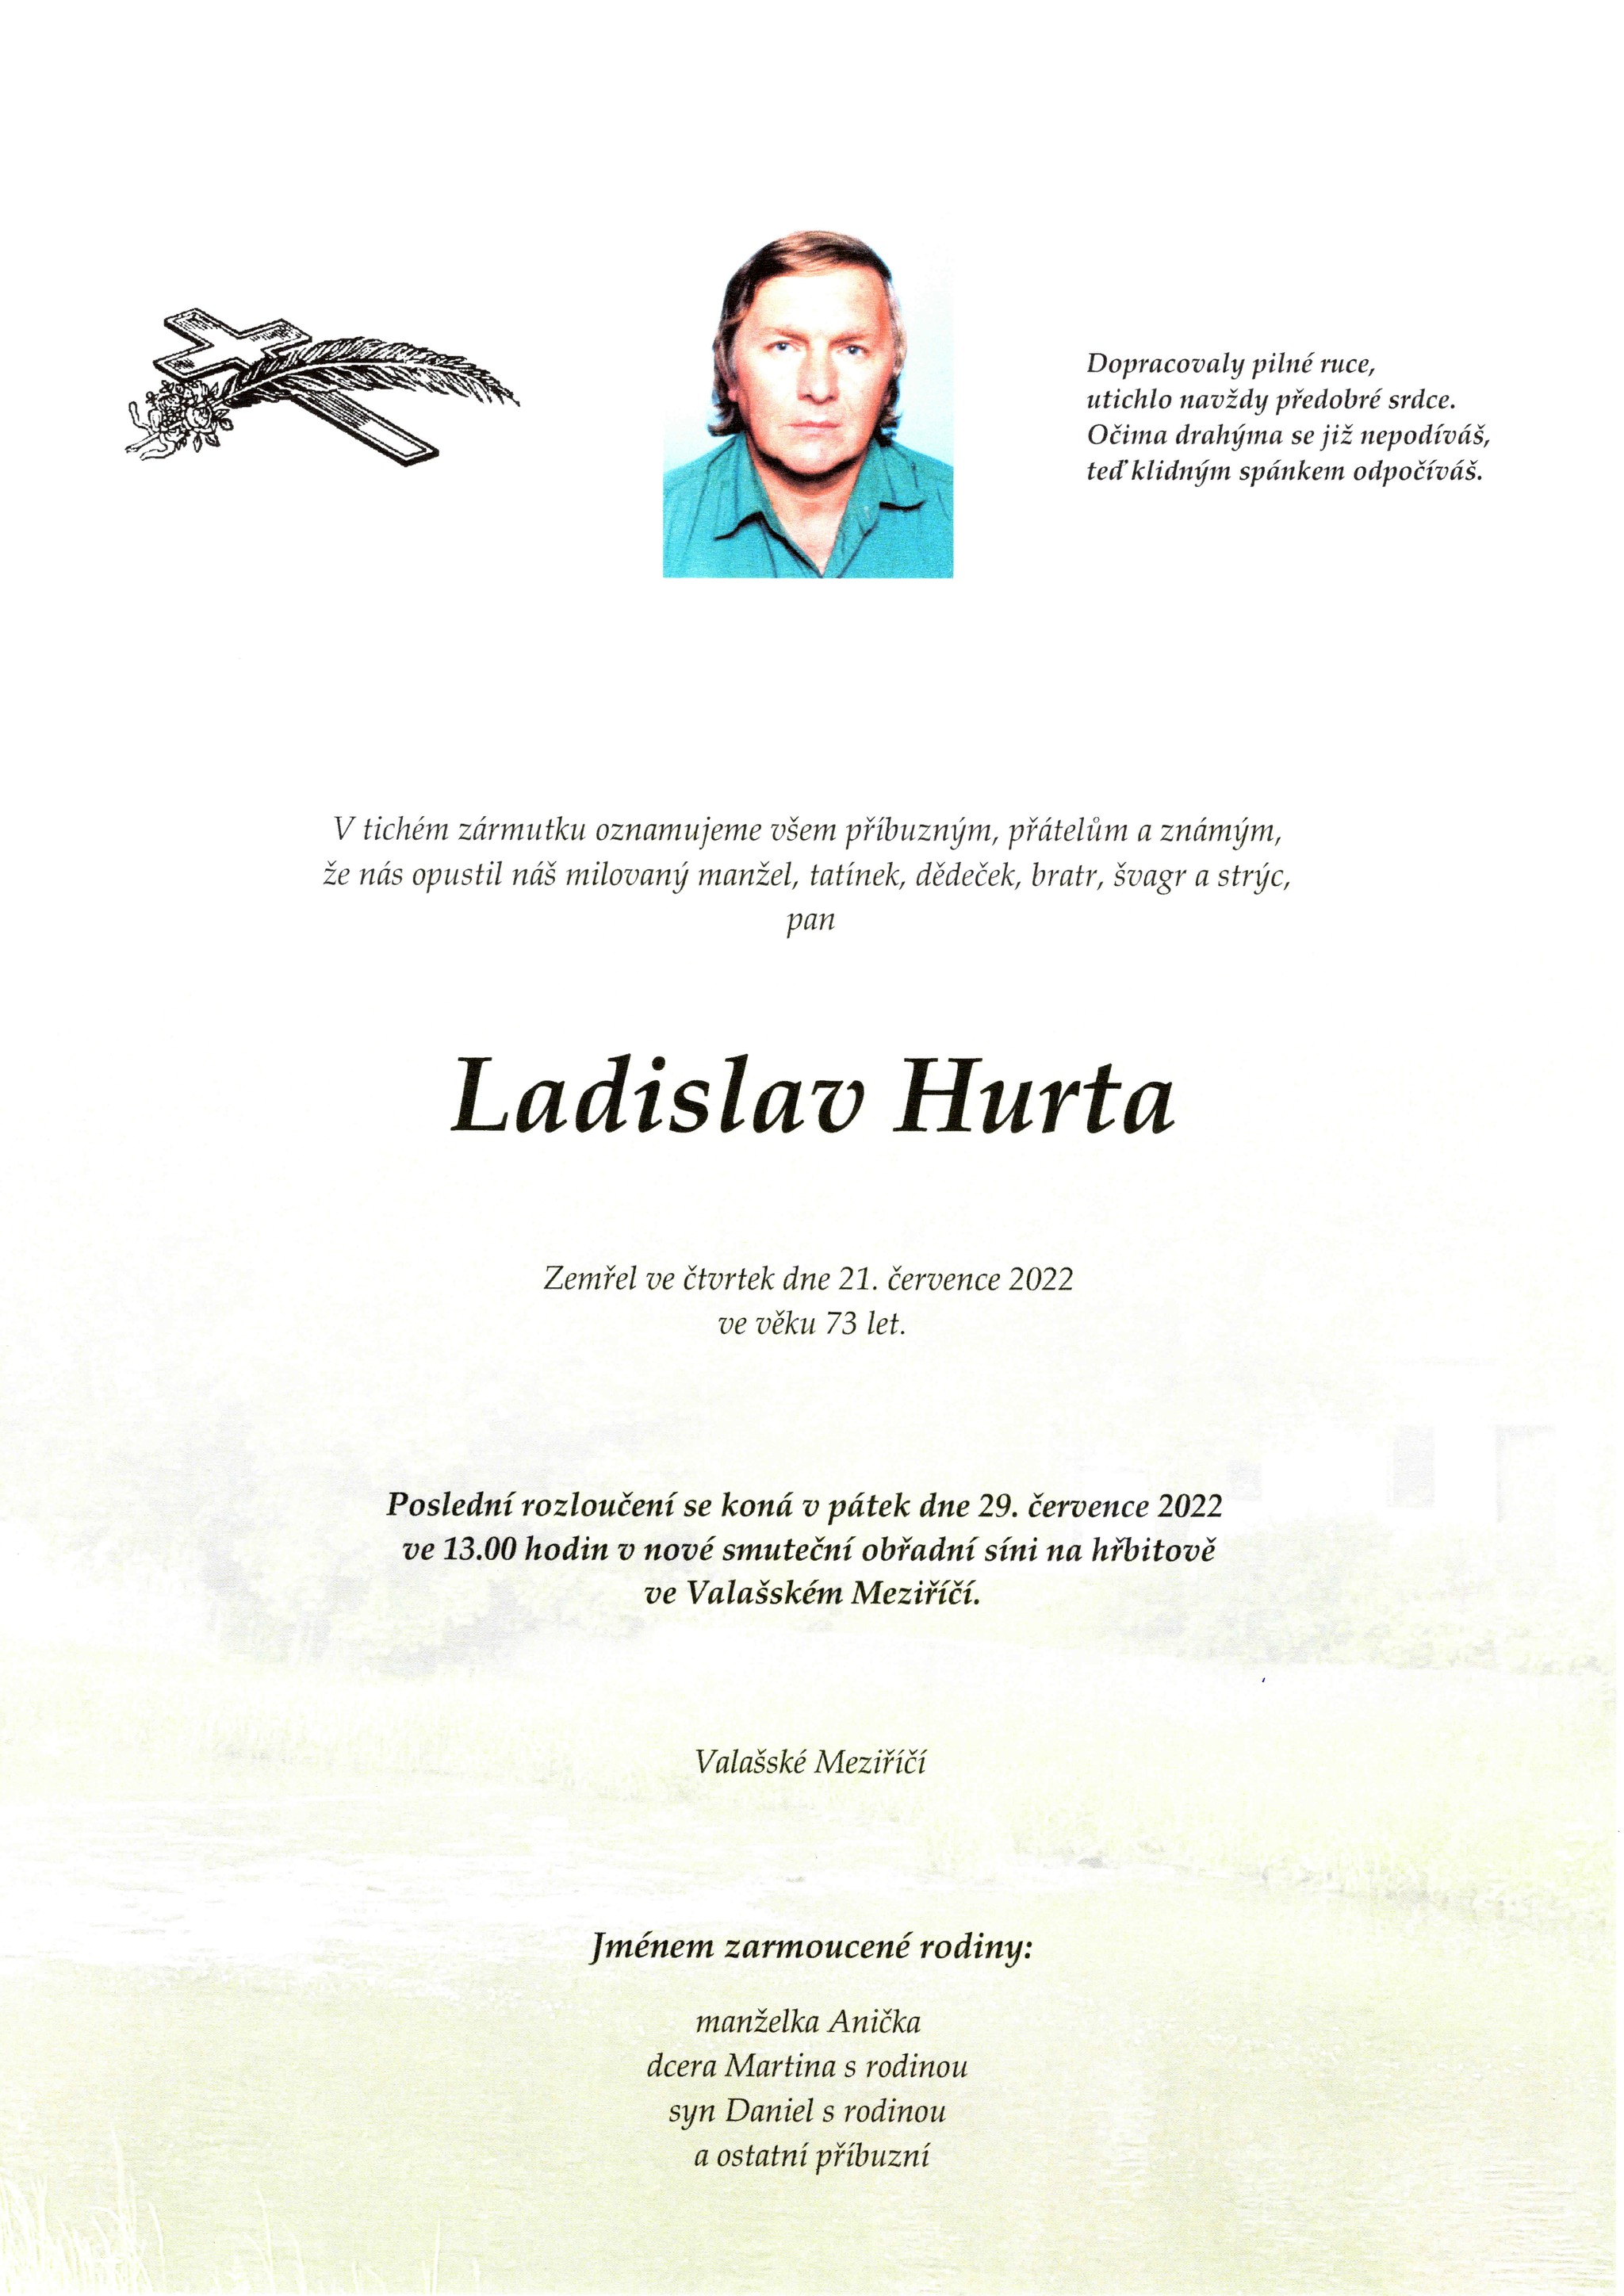 Ladislav Hurta